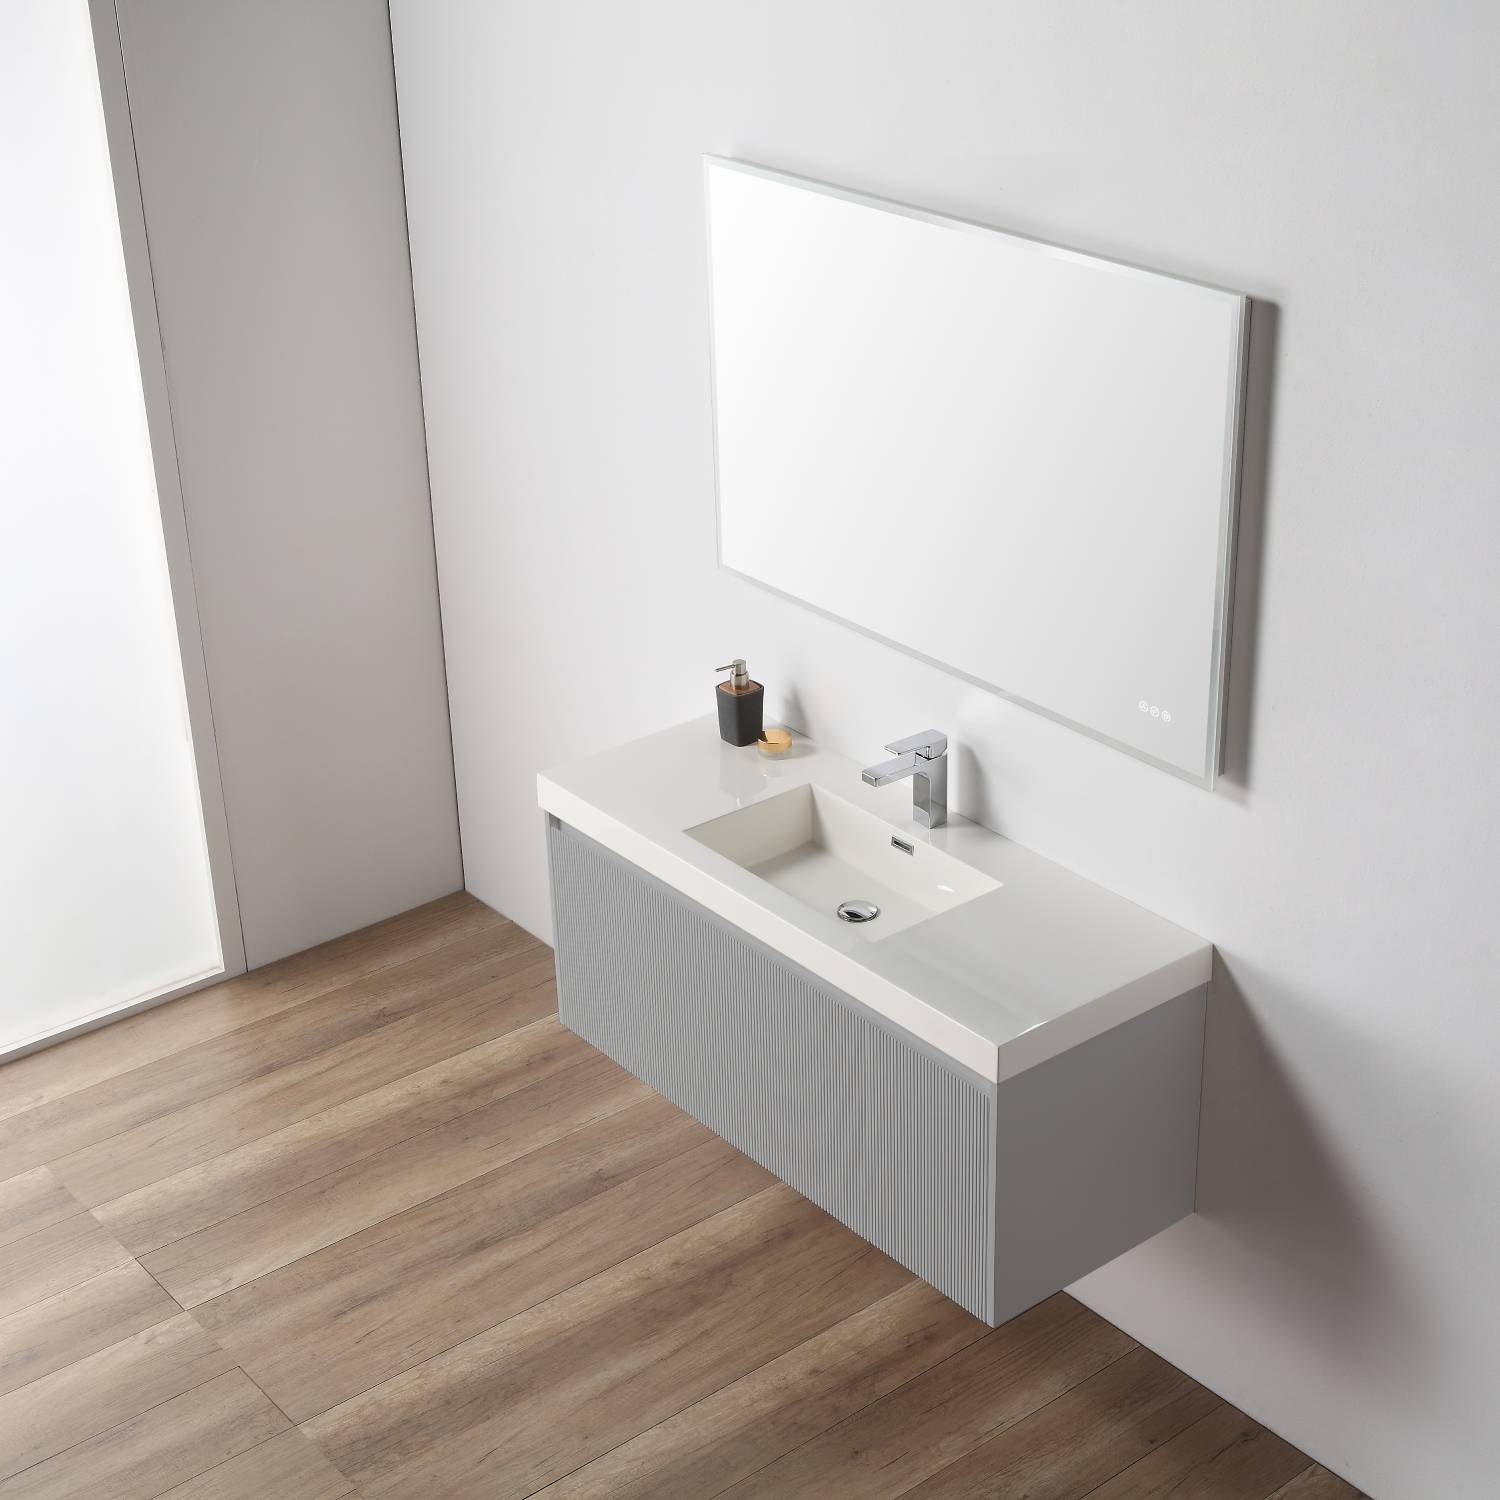 Positano 48" Bathroom Vanity  #size_48"  #color_light grey